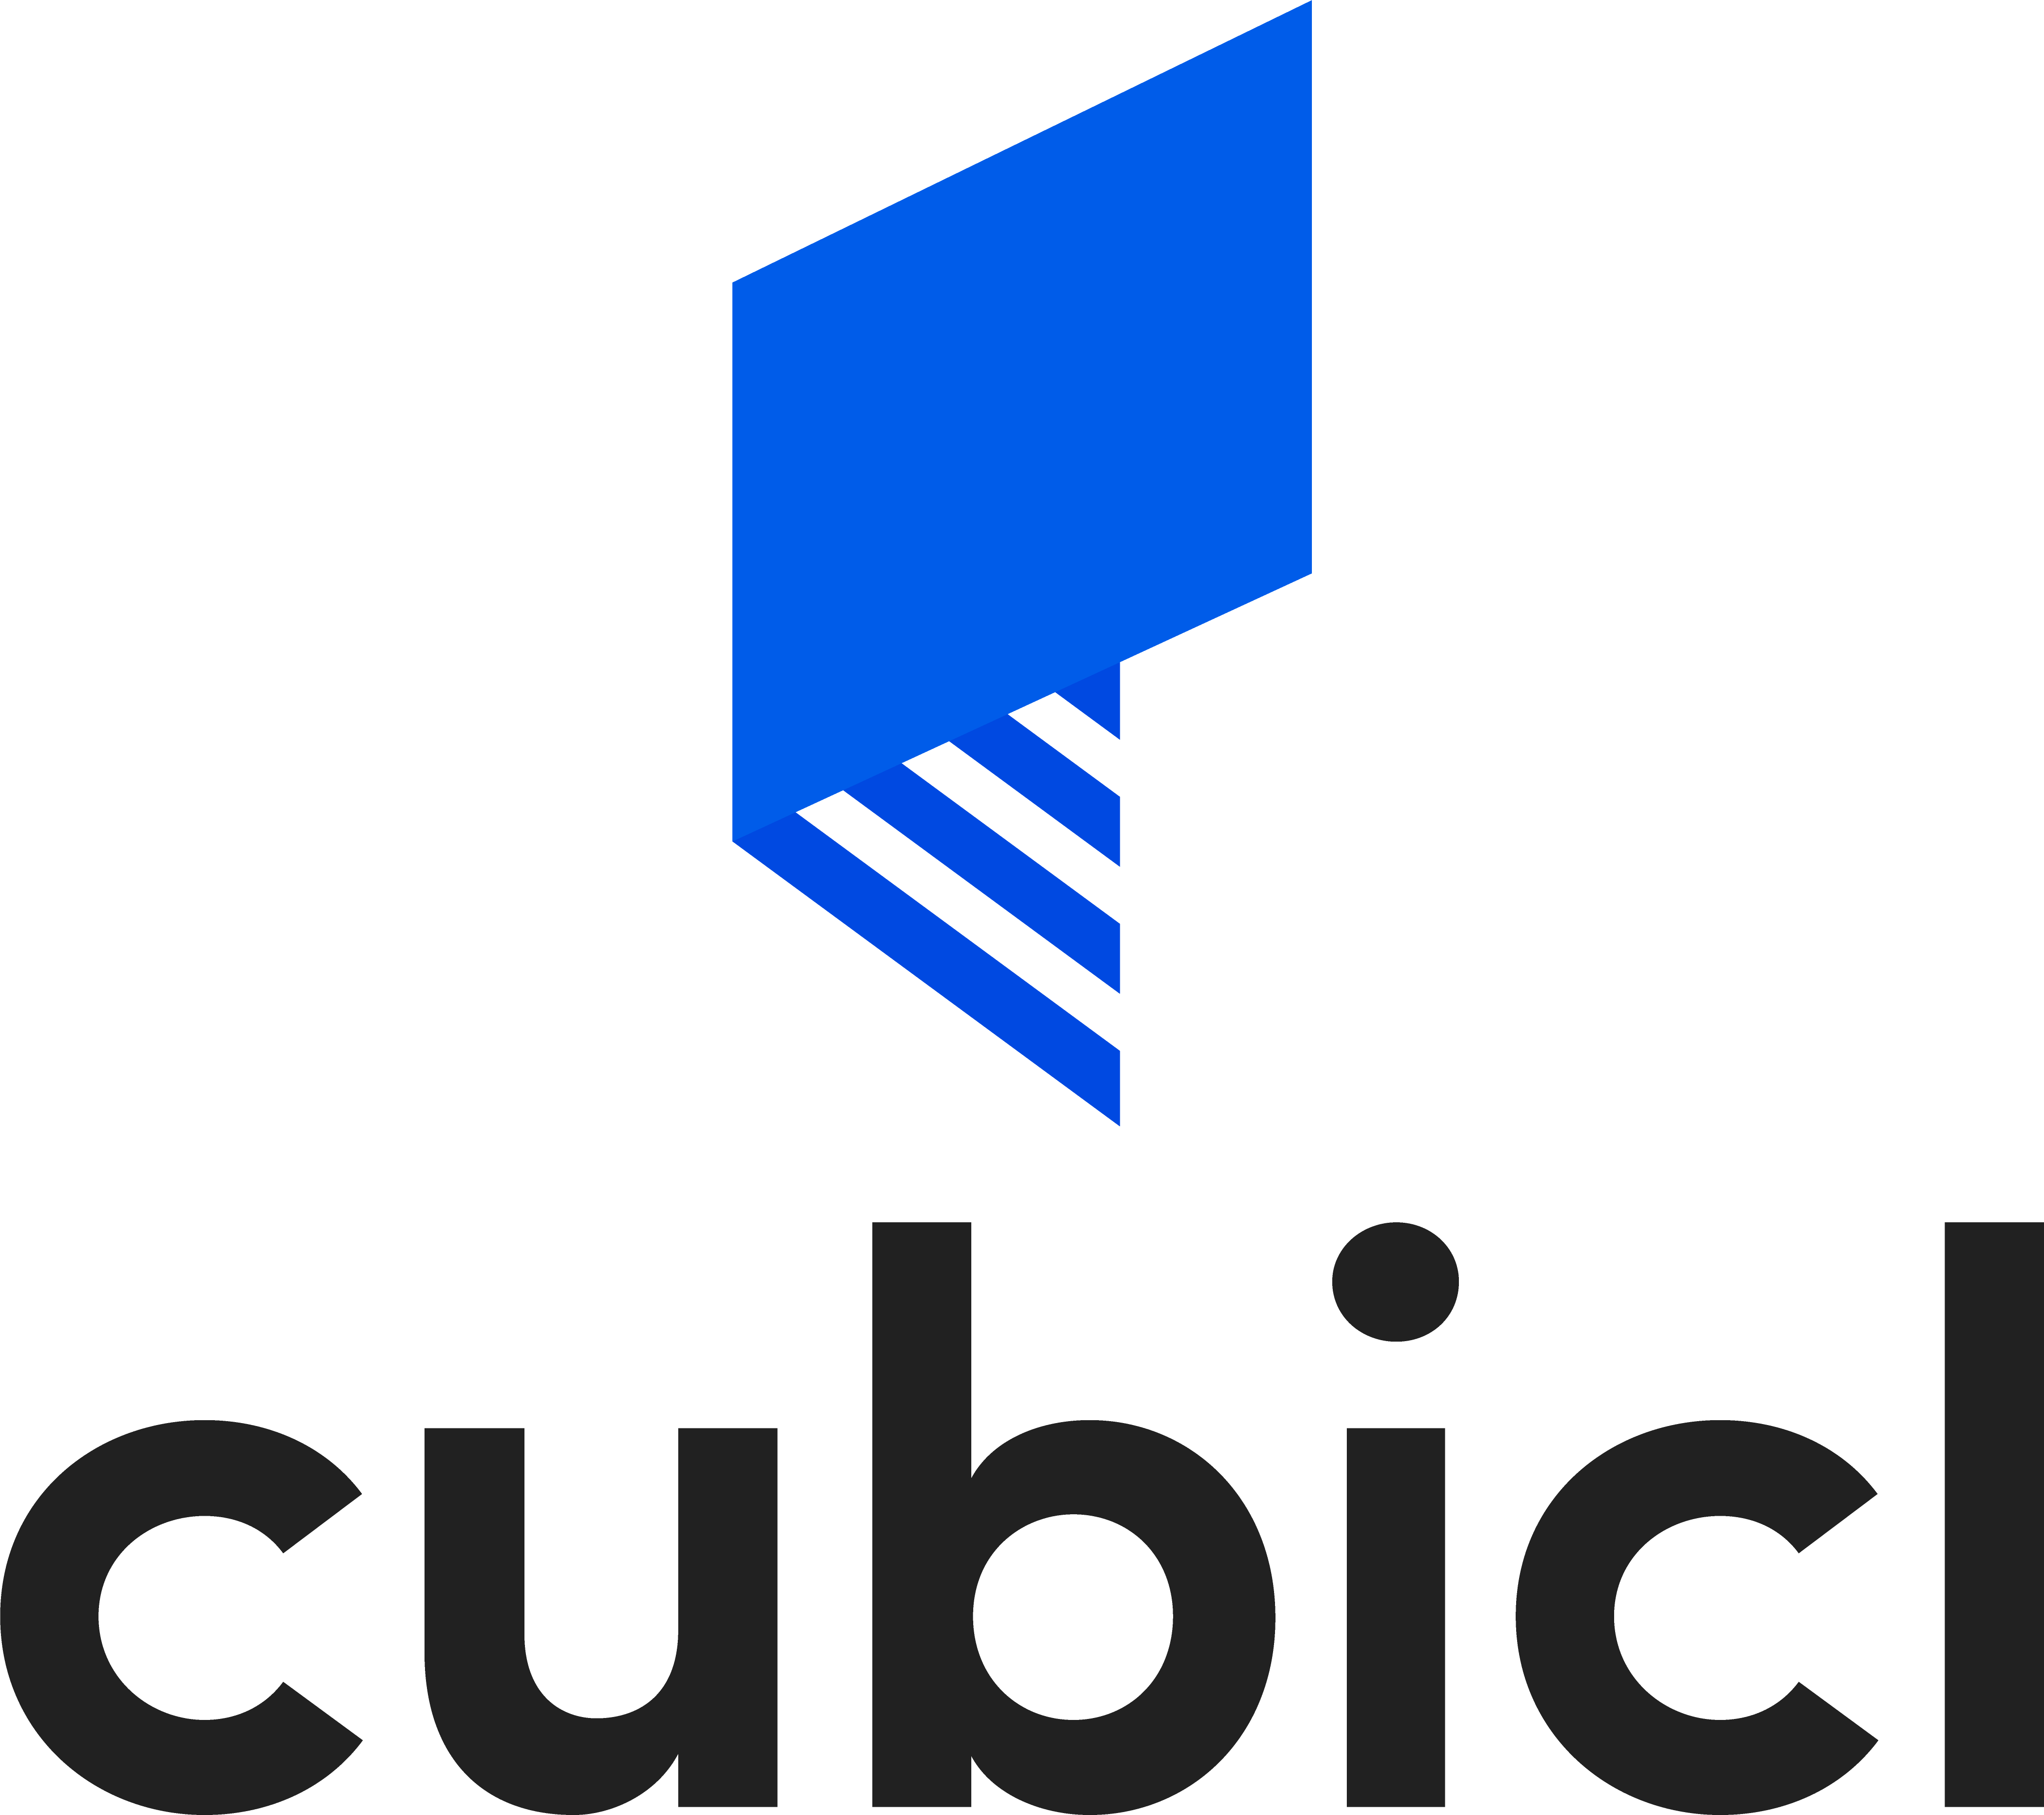 Cubicl logo